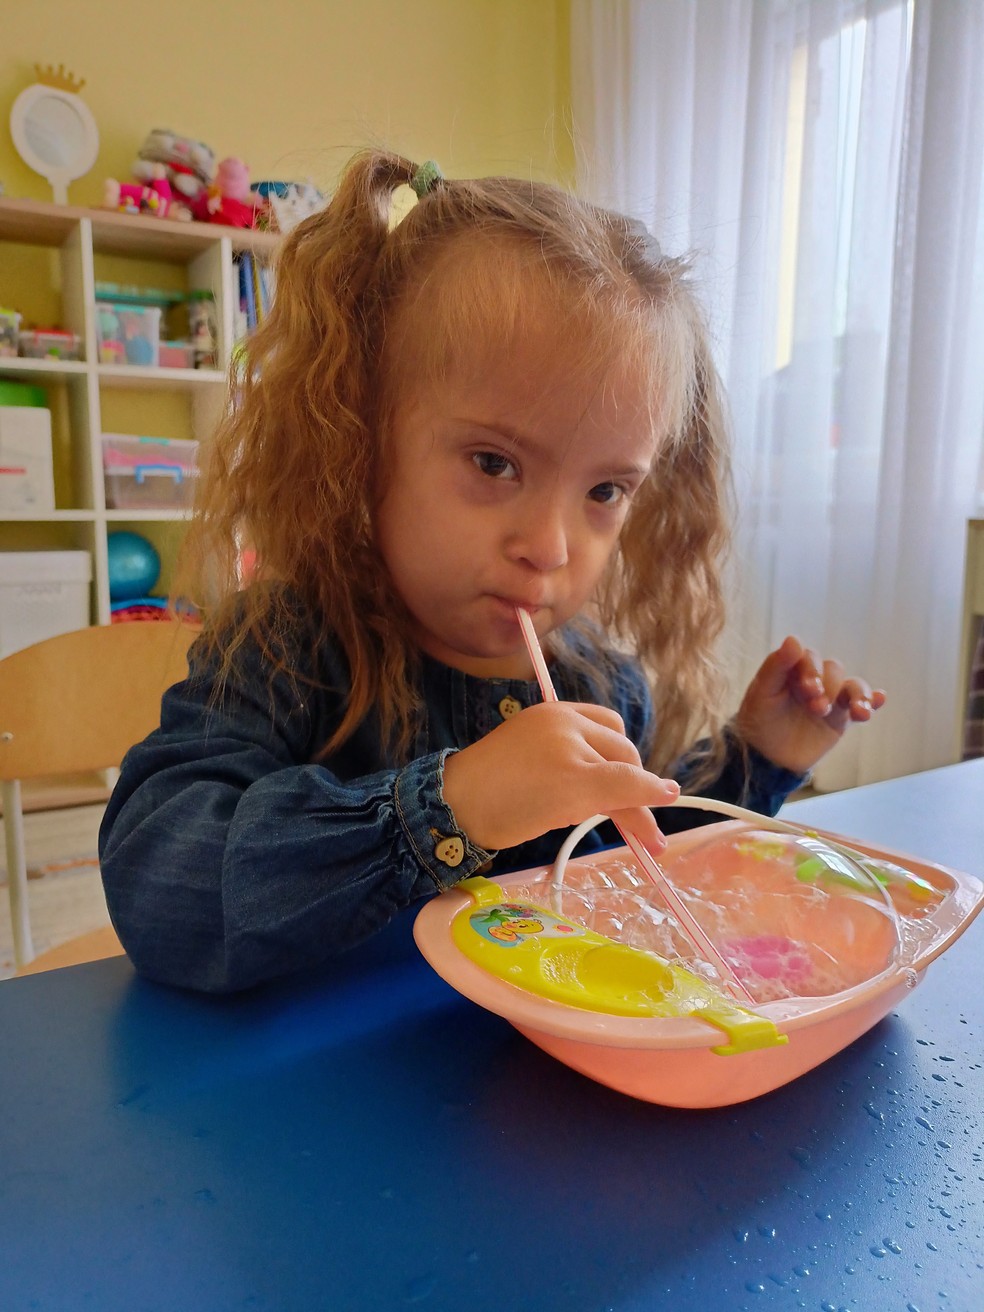 Liza Dmitriev, de 4 anos, morreu em ataque russo na cidade de Vinnytsia, na Ucrânia — Foto: LogoClub Children's Center/Divulgação